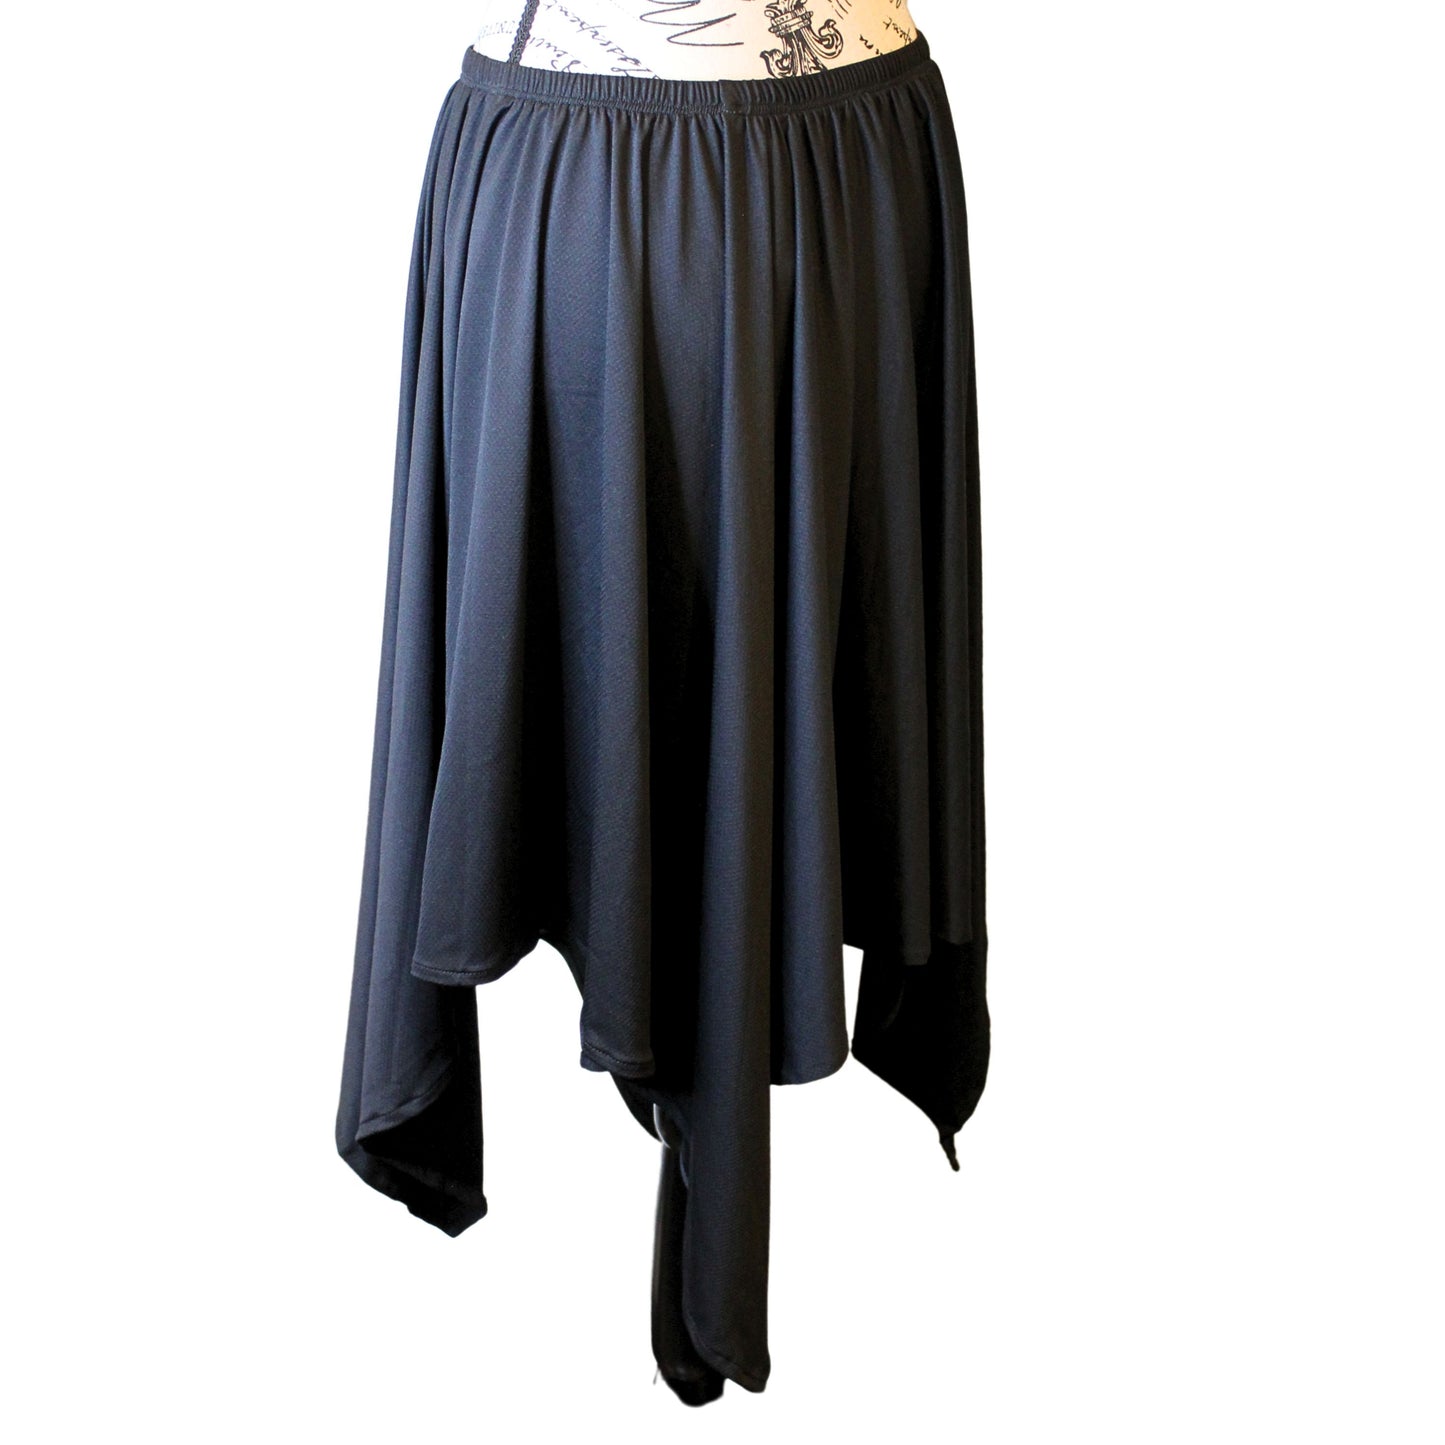 The VM Long Asymmetrical Skirt